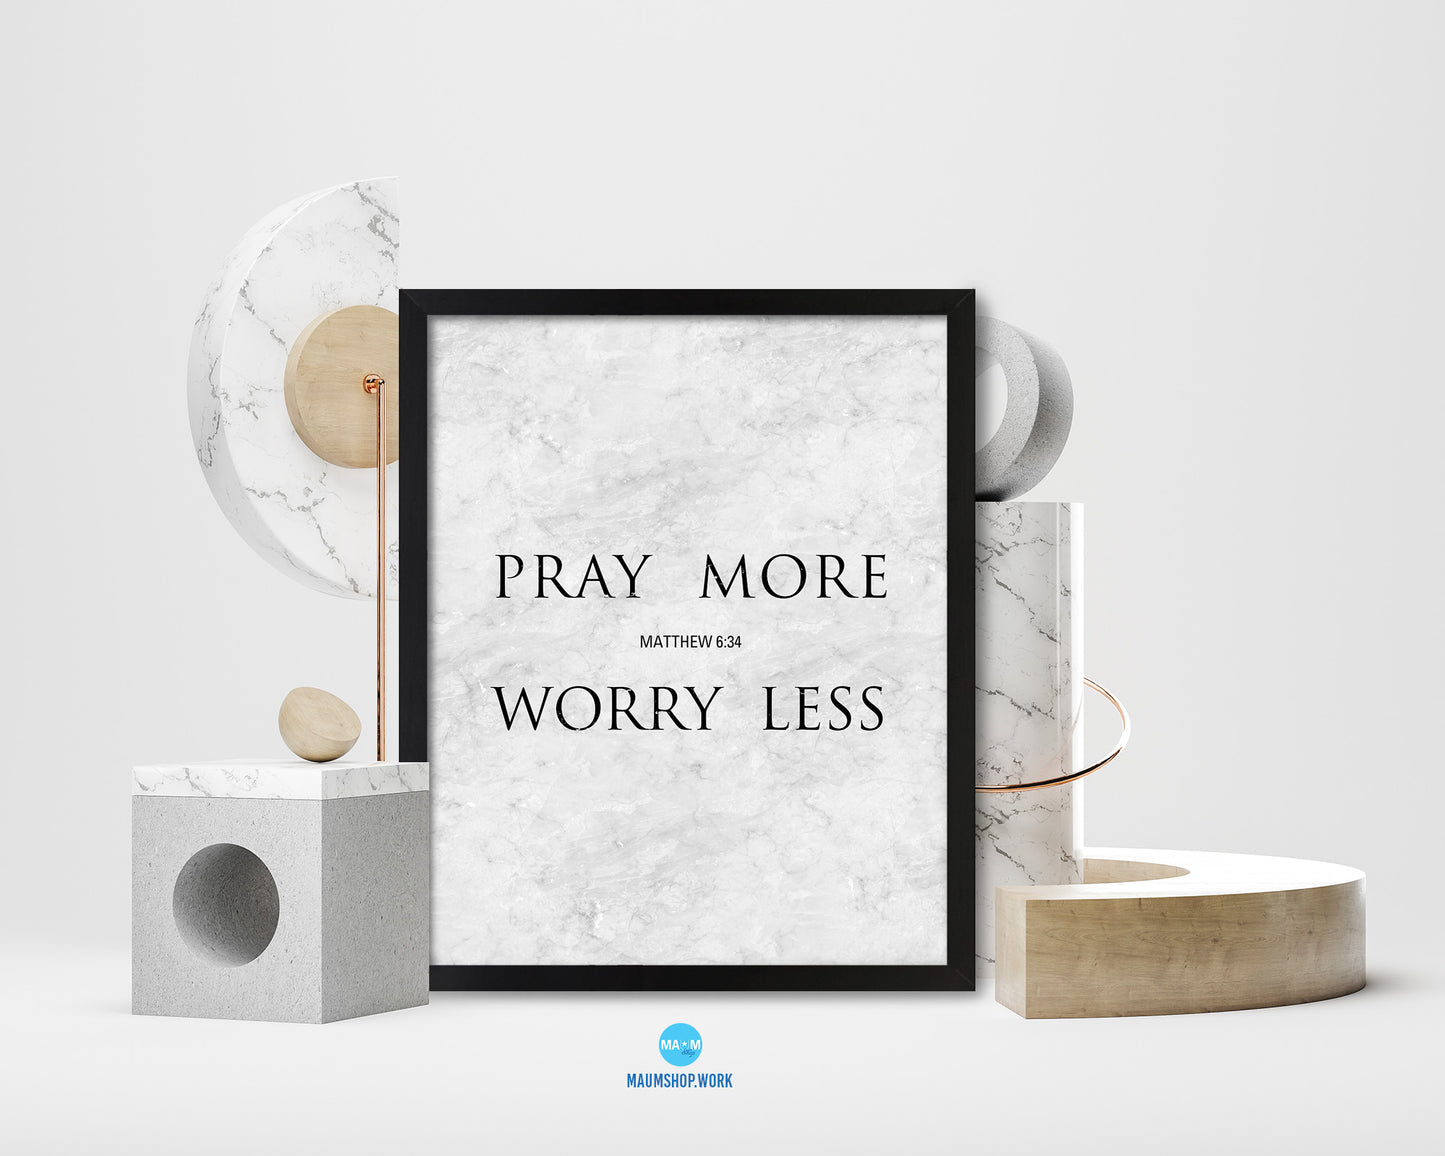 Pray more Worry less, Matthew 6:34 Bible Scripture Verse Framed Print Wall Art Decor Gifts